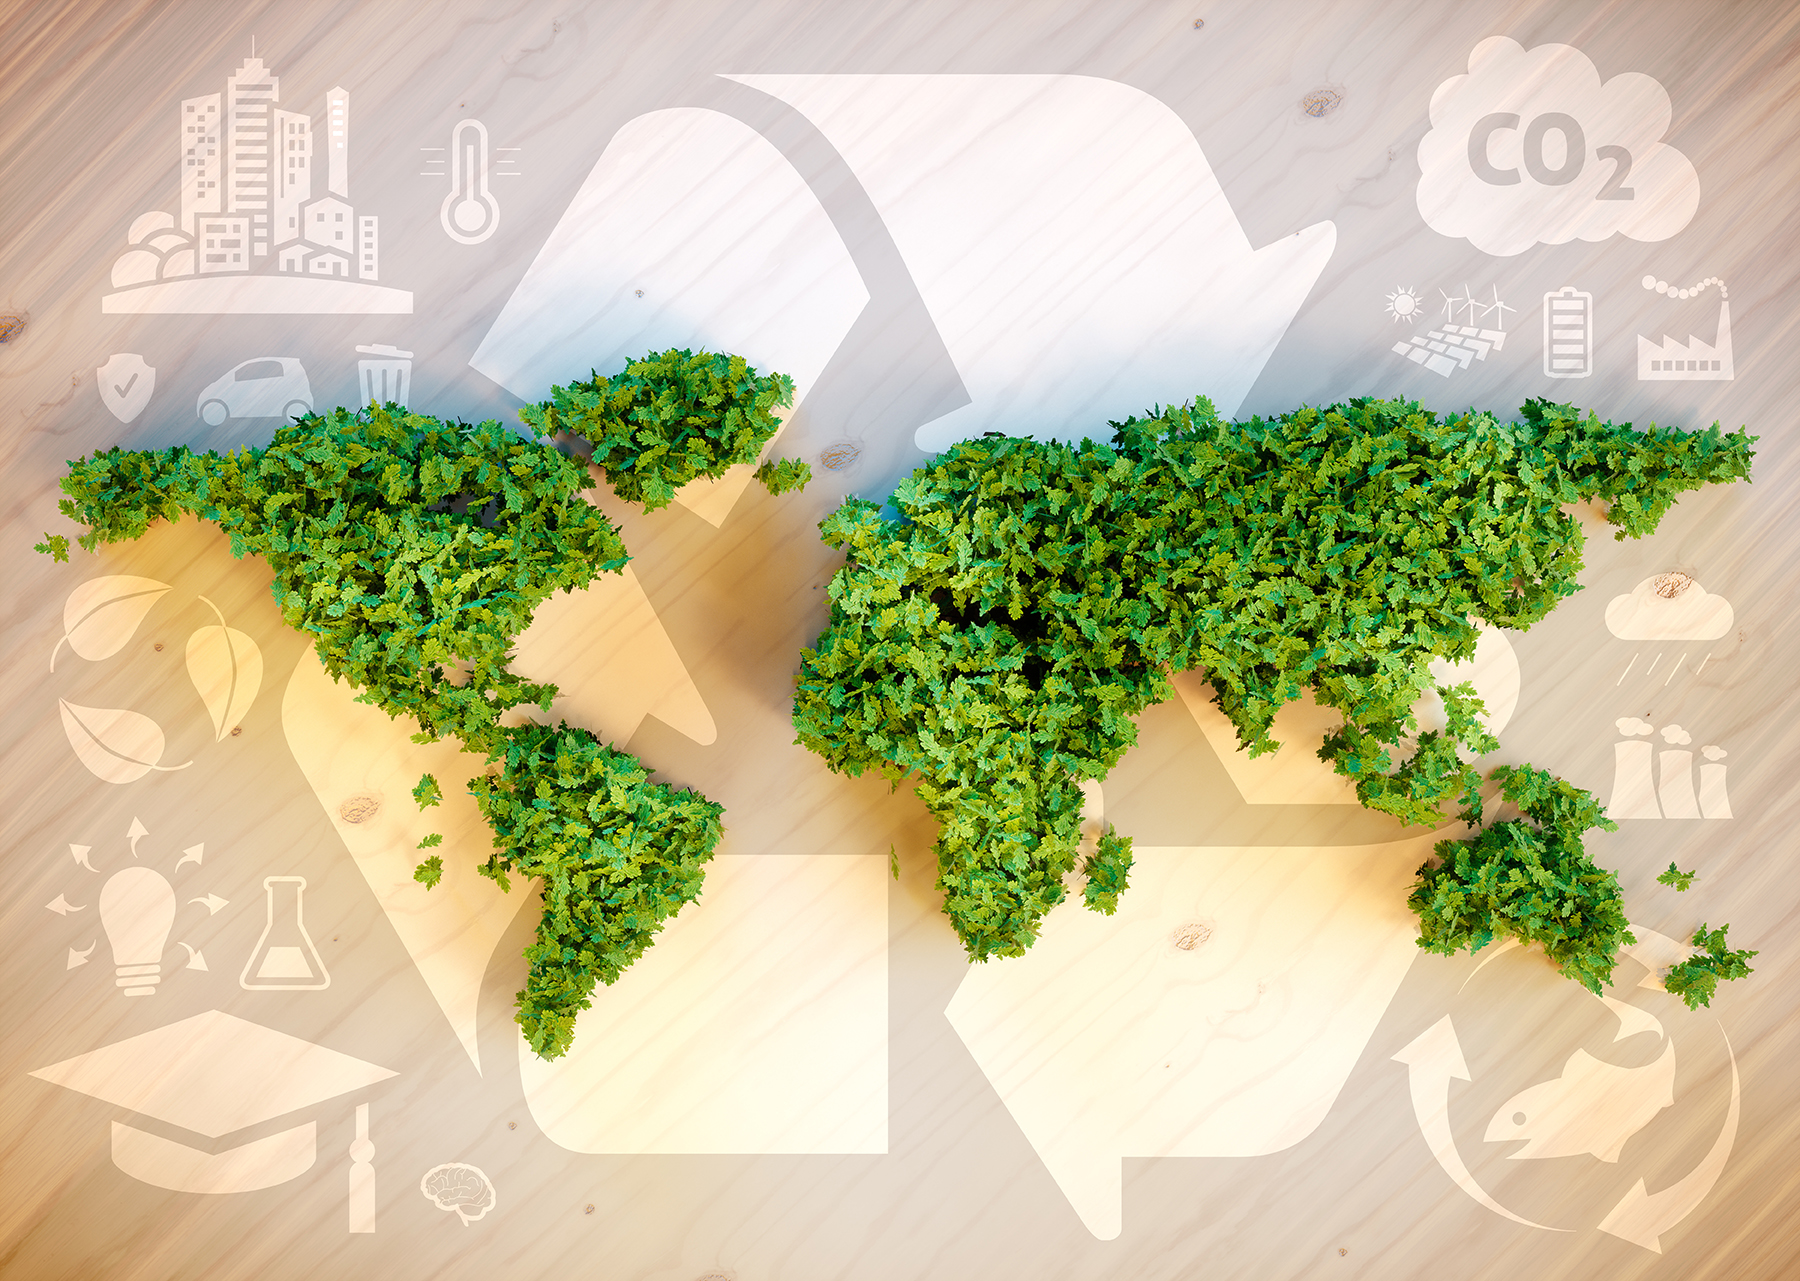 As empresas valorizam cada vez mais a sustentabilidade dos seus fornecedores. E você?